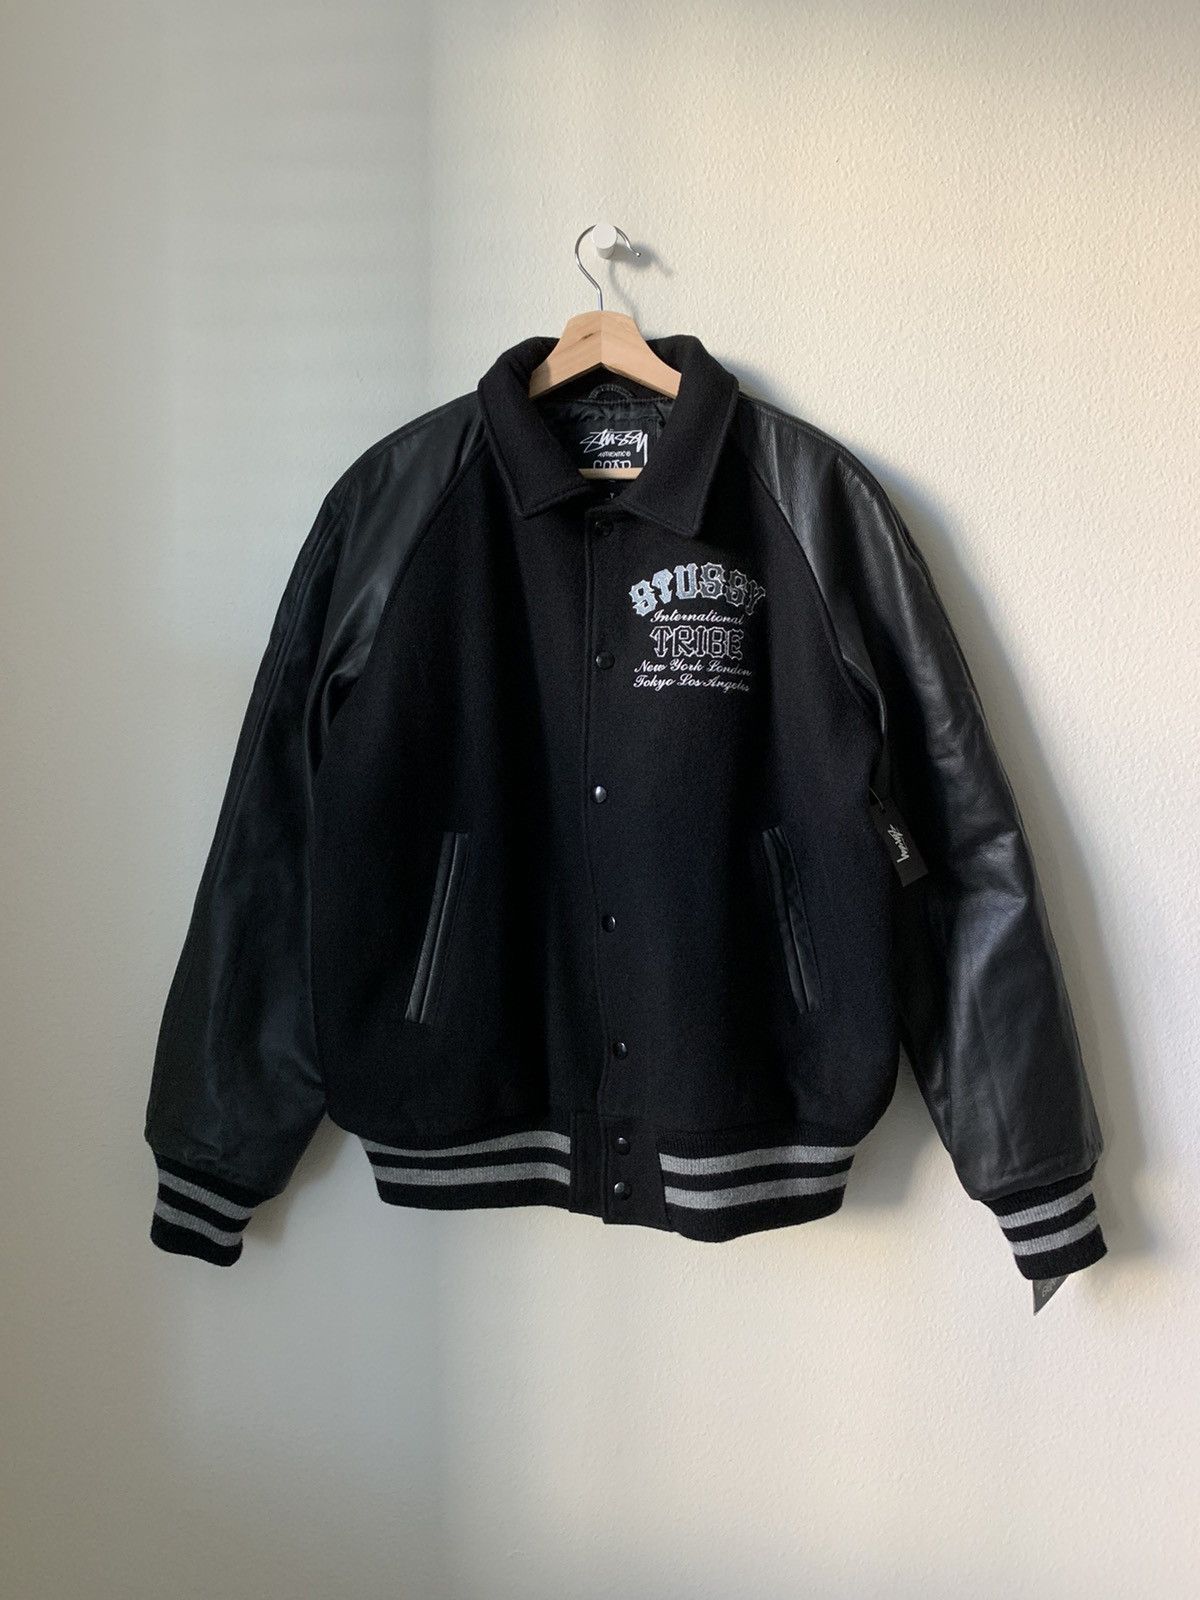 Vintage Stussy 05 anniversary varsity jacket | Grailed